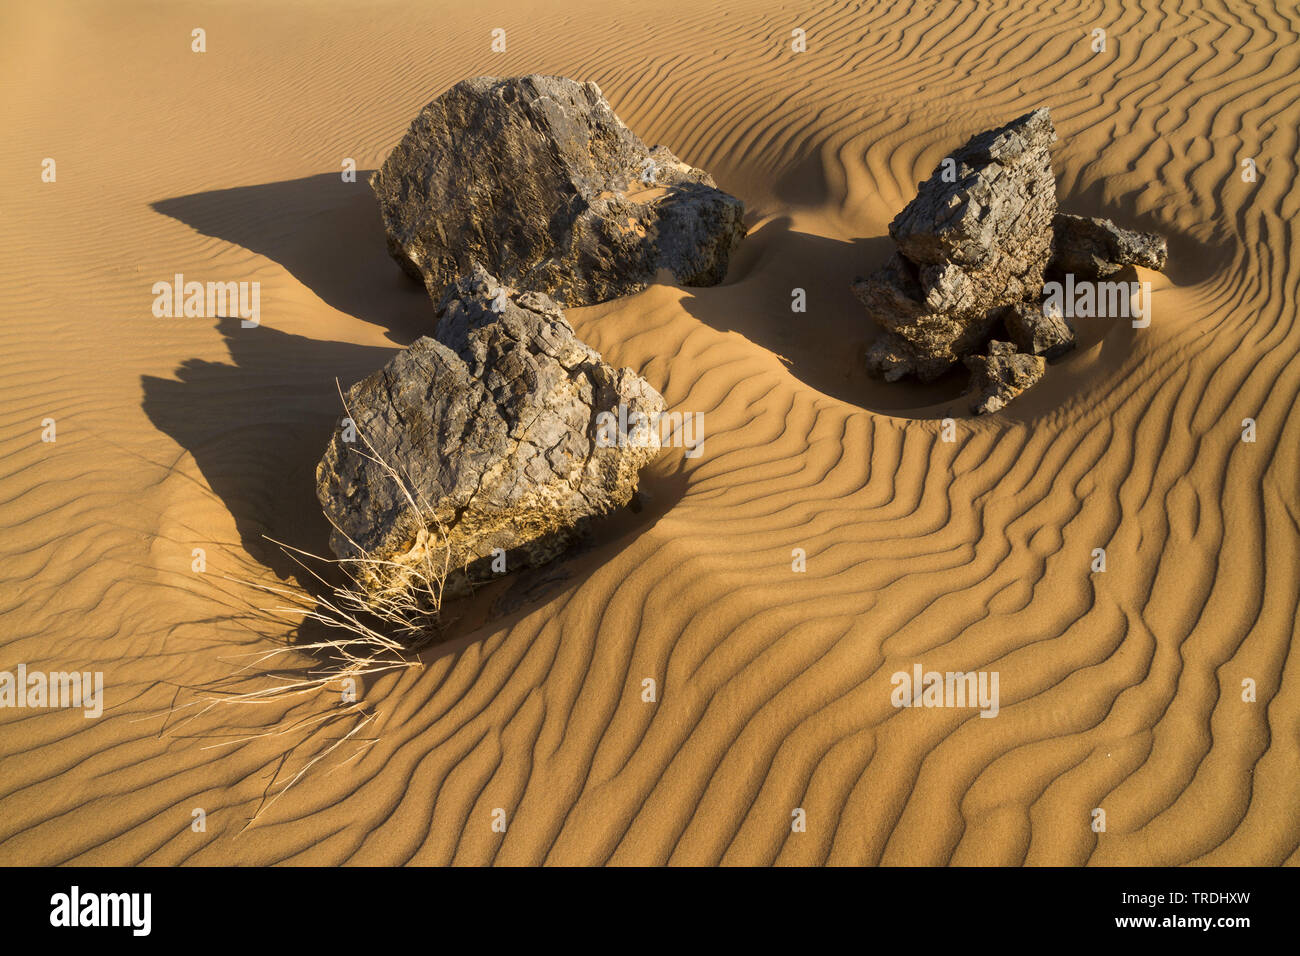 Desierto Central de Omán Omán Foto de stock